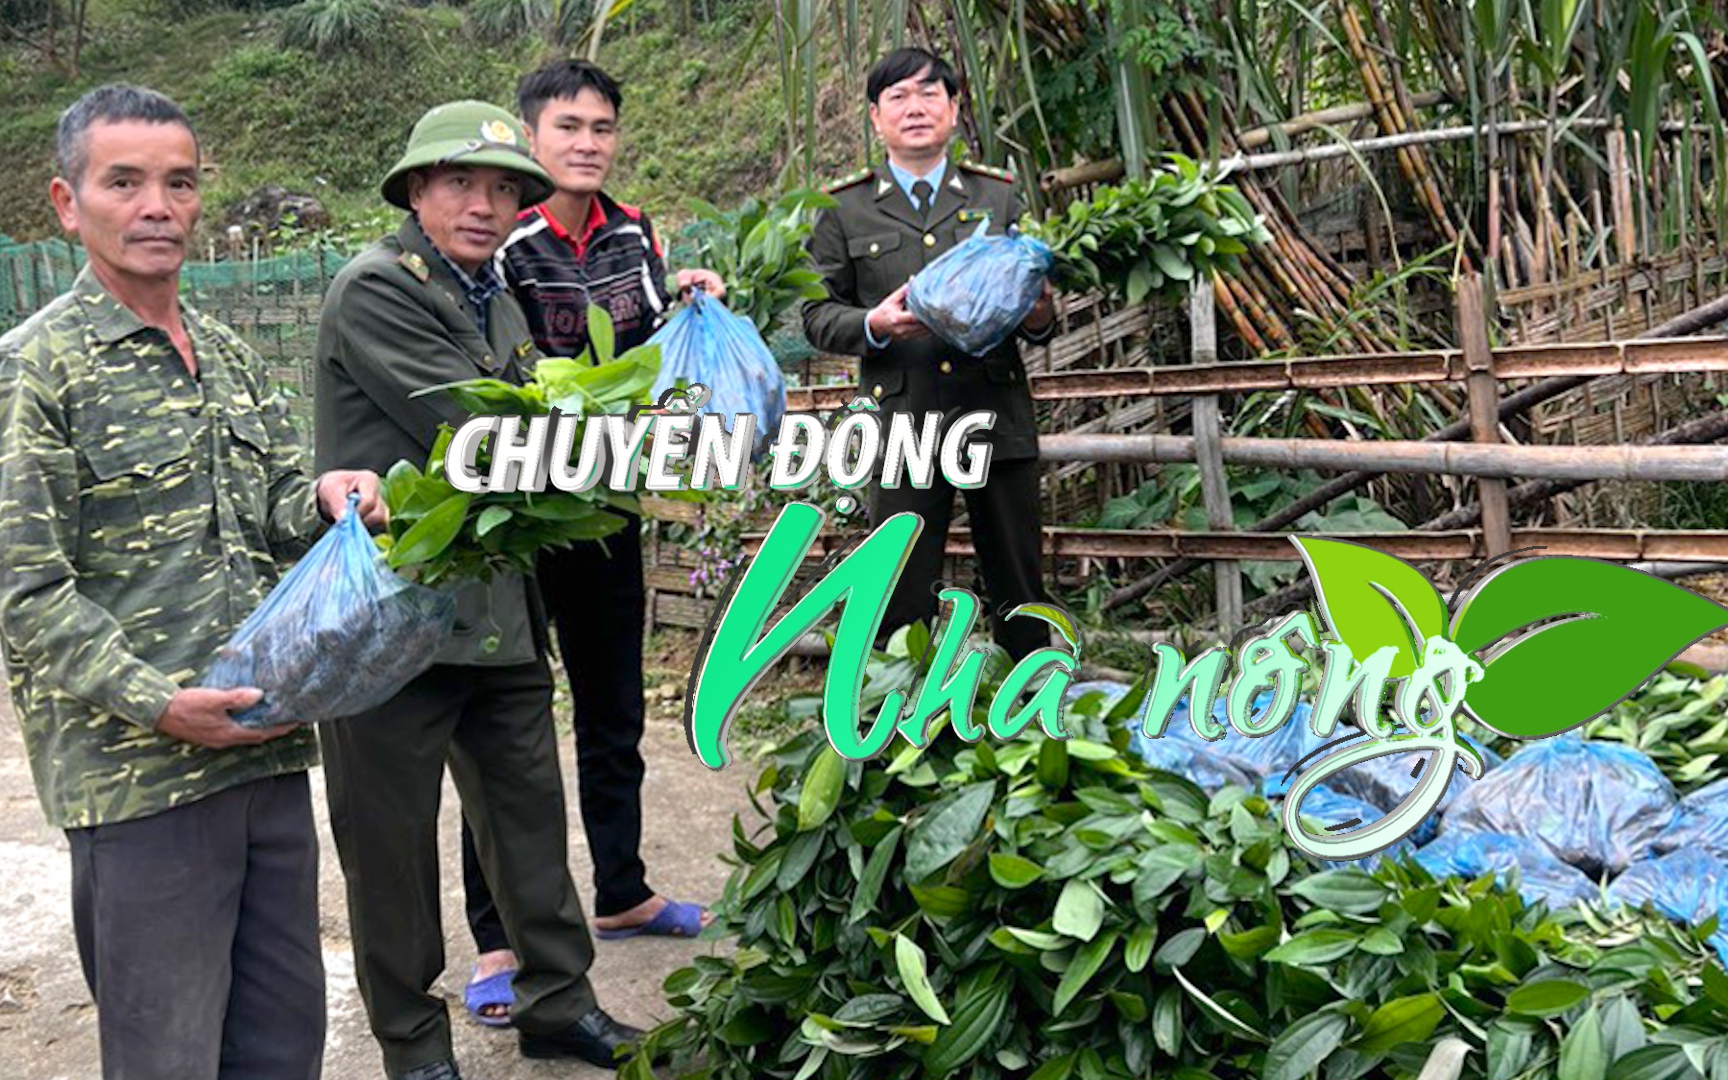 Chuyển động Nhà nông 20/12: Phú Thọ cấp trên 171.000 cây quế giống phục vụ trồng rừng sản xuất